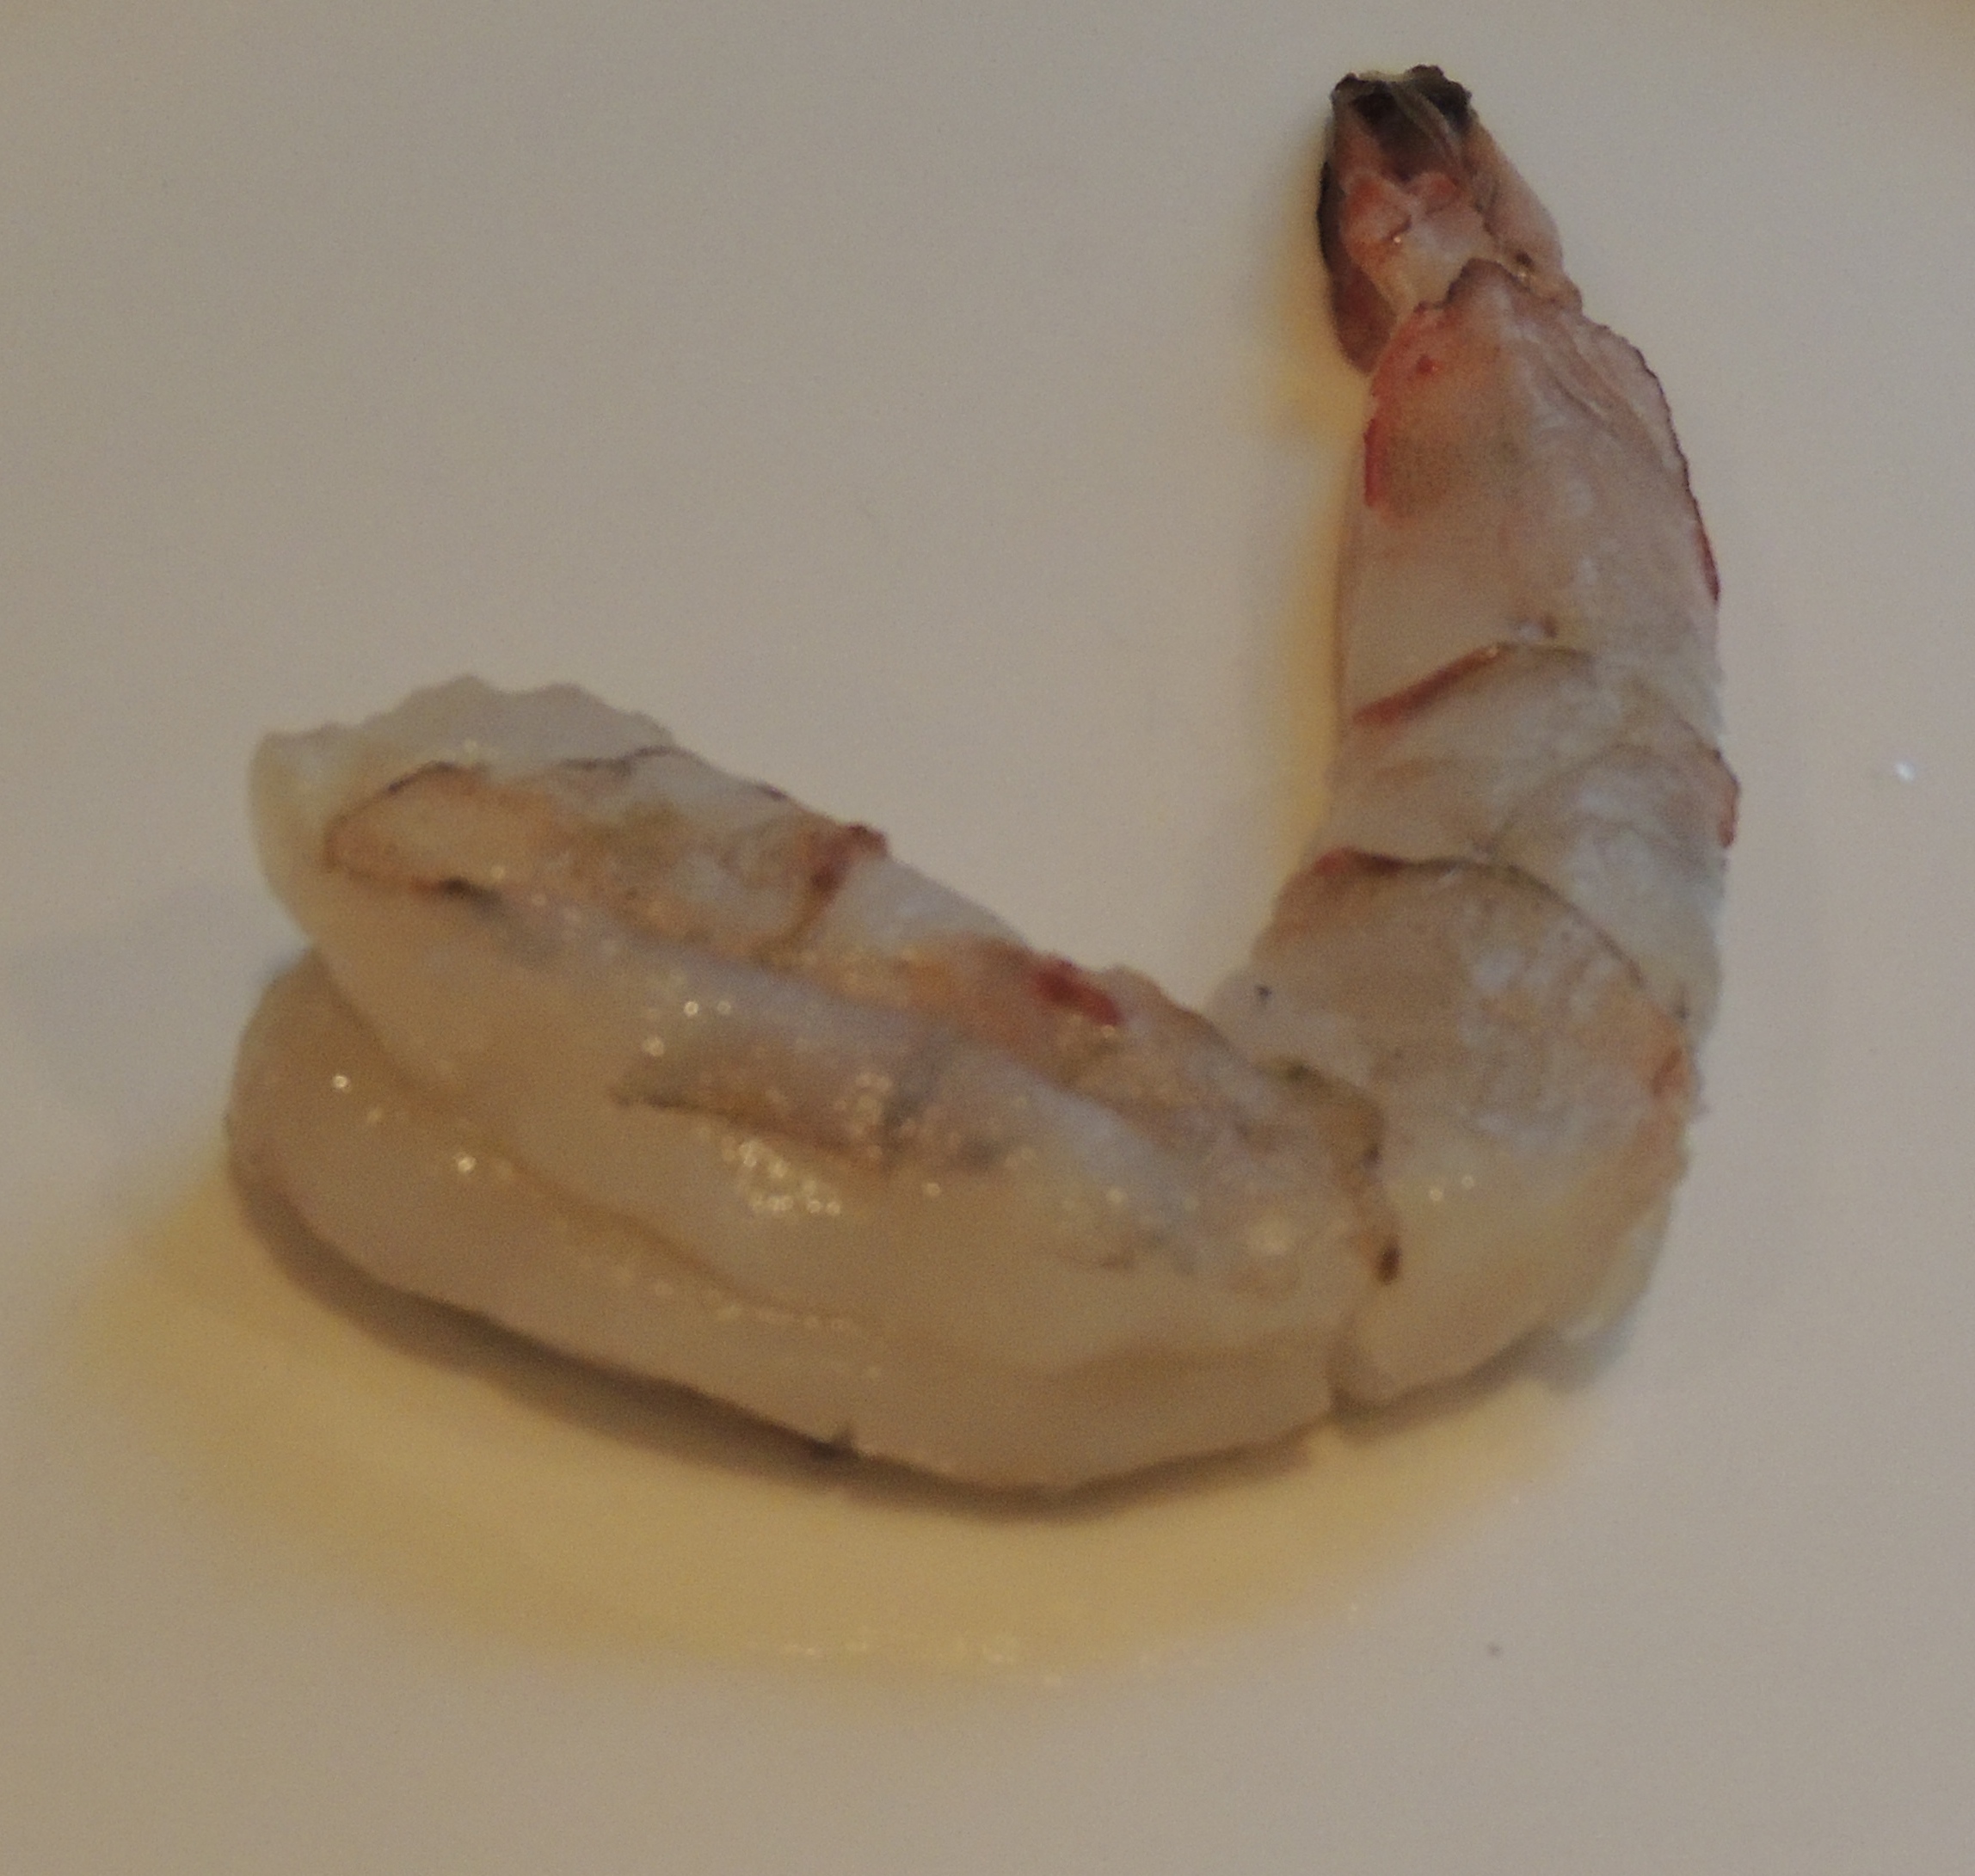 Shelled and deveined shrimp.